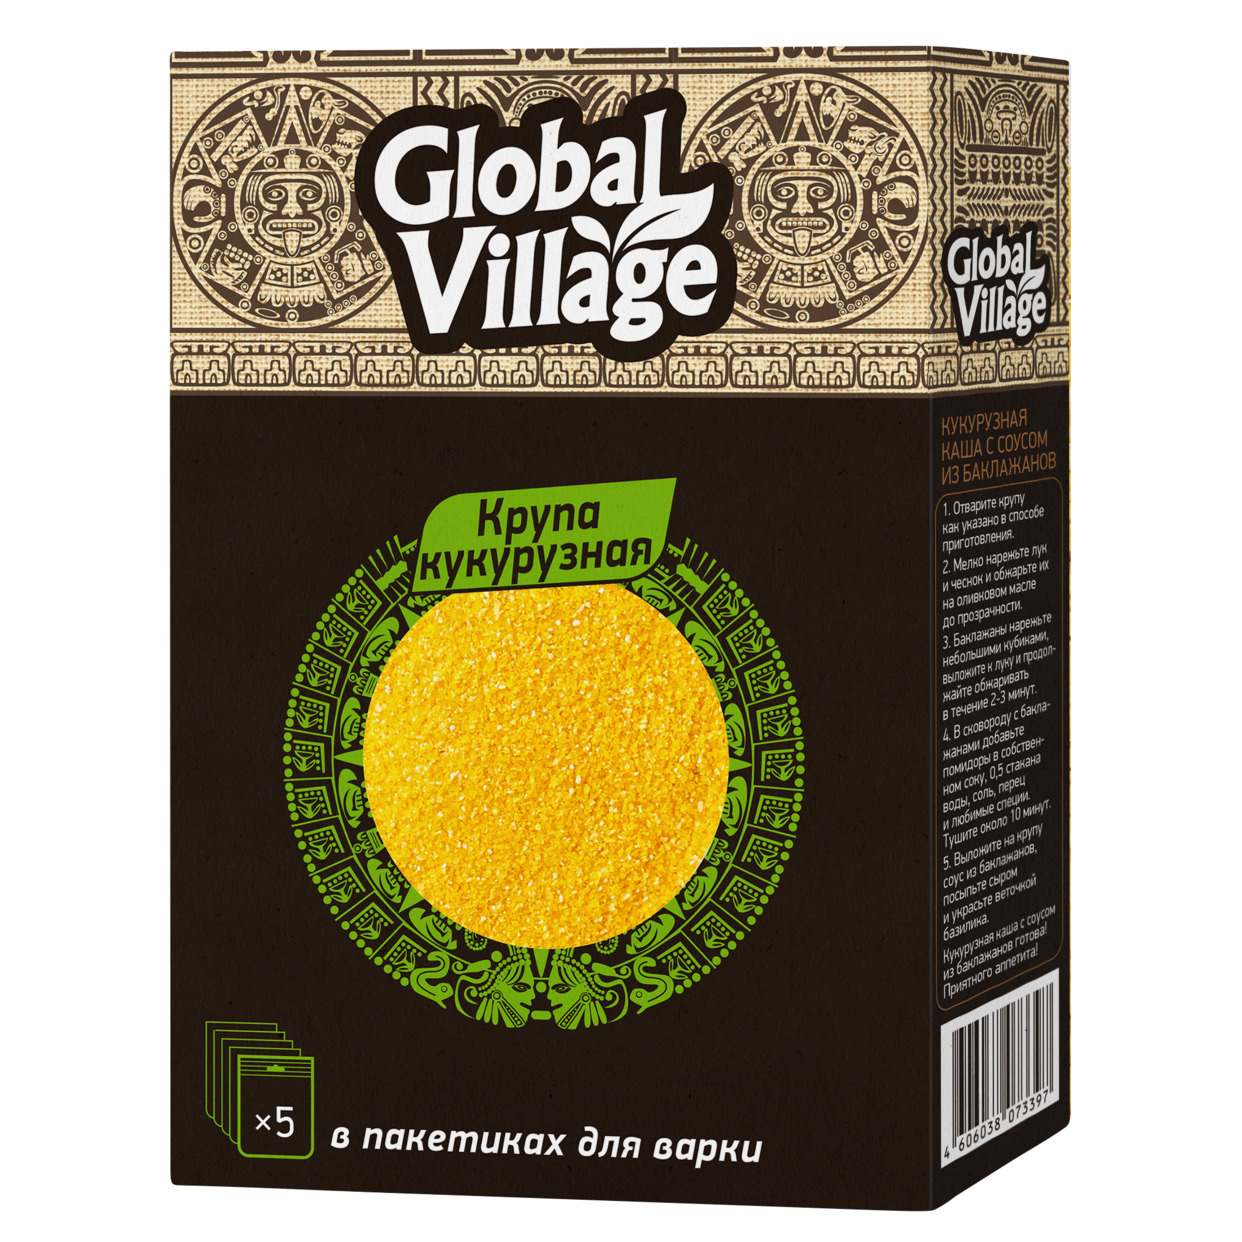 Крупа кукурузная в пакетиках для варки Global Village 5*80 гр по акции в Пятерочке